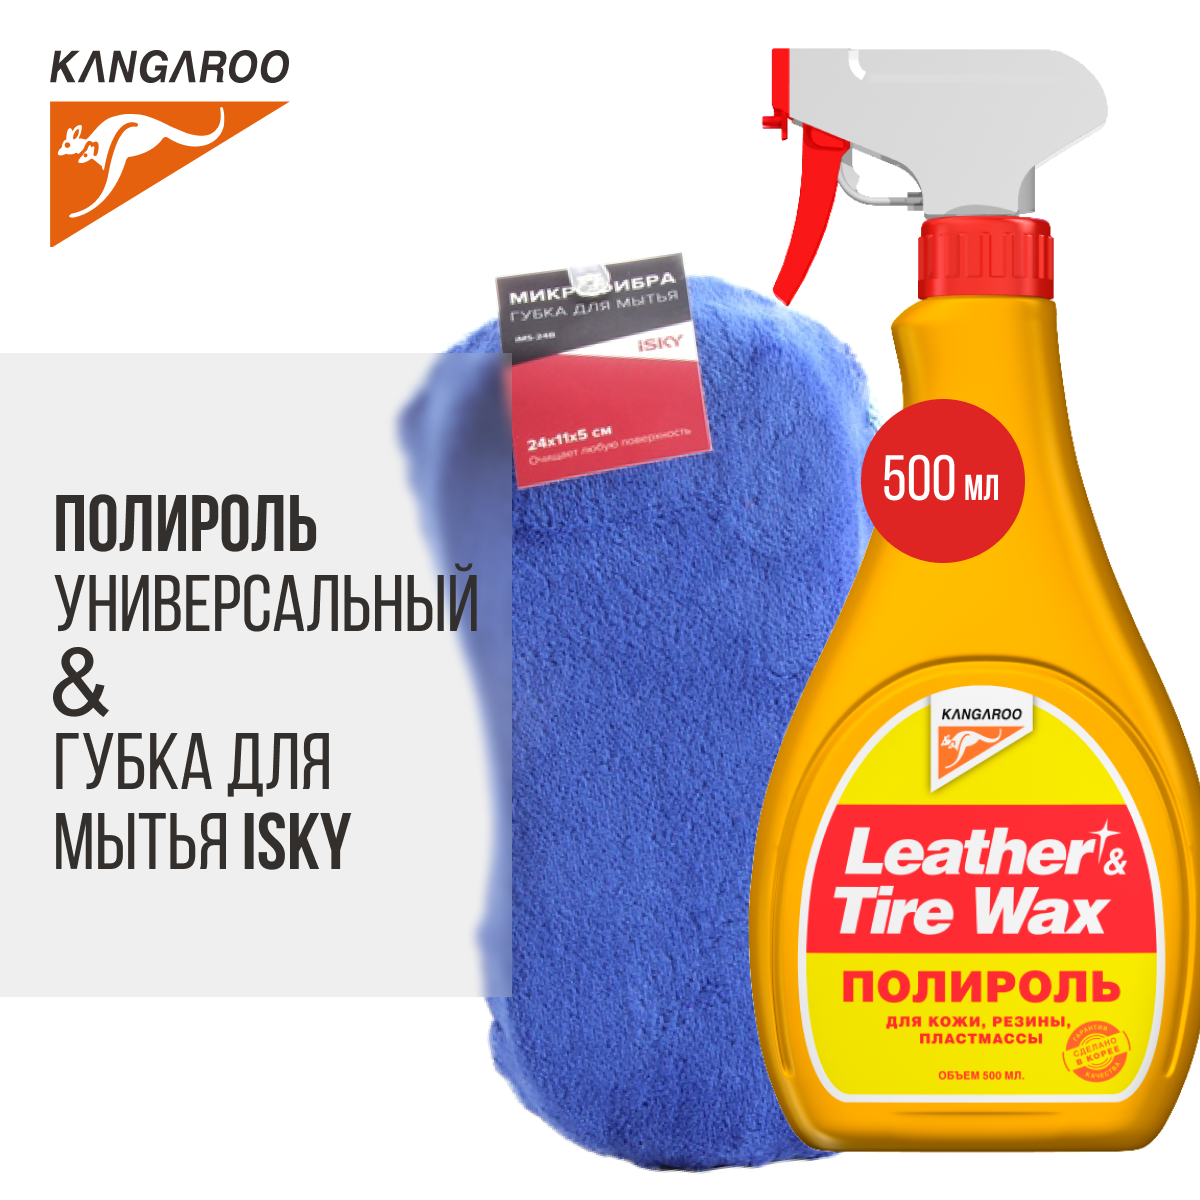 Полироль Leather & Tire Wax lite + Губка для мытья из микрофибры iSky